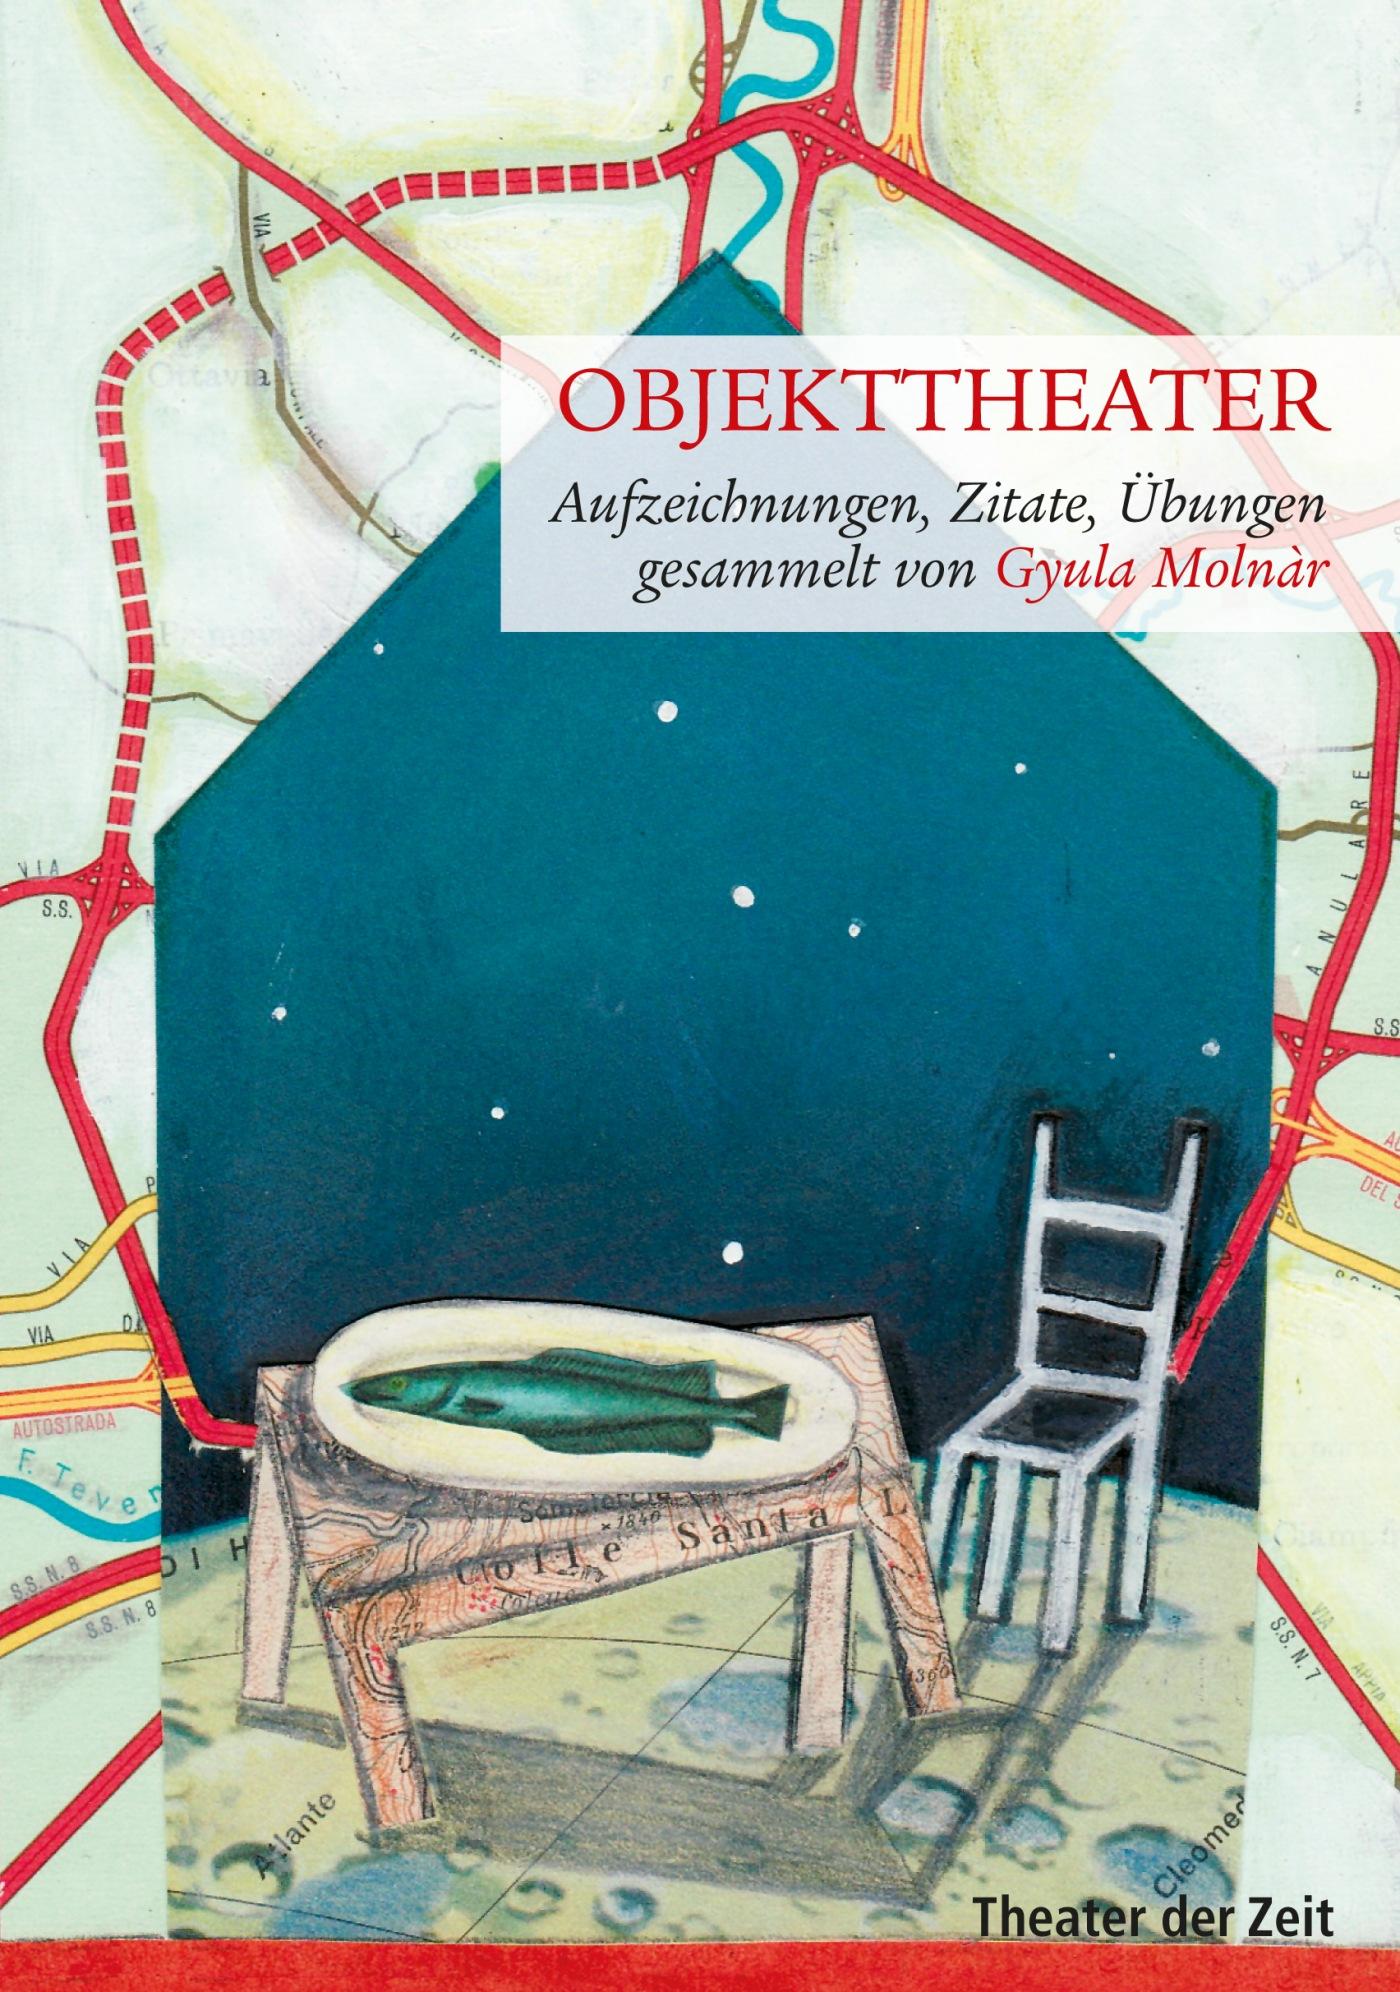 "Objekttheater"